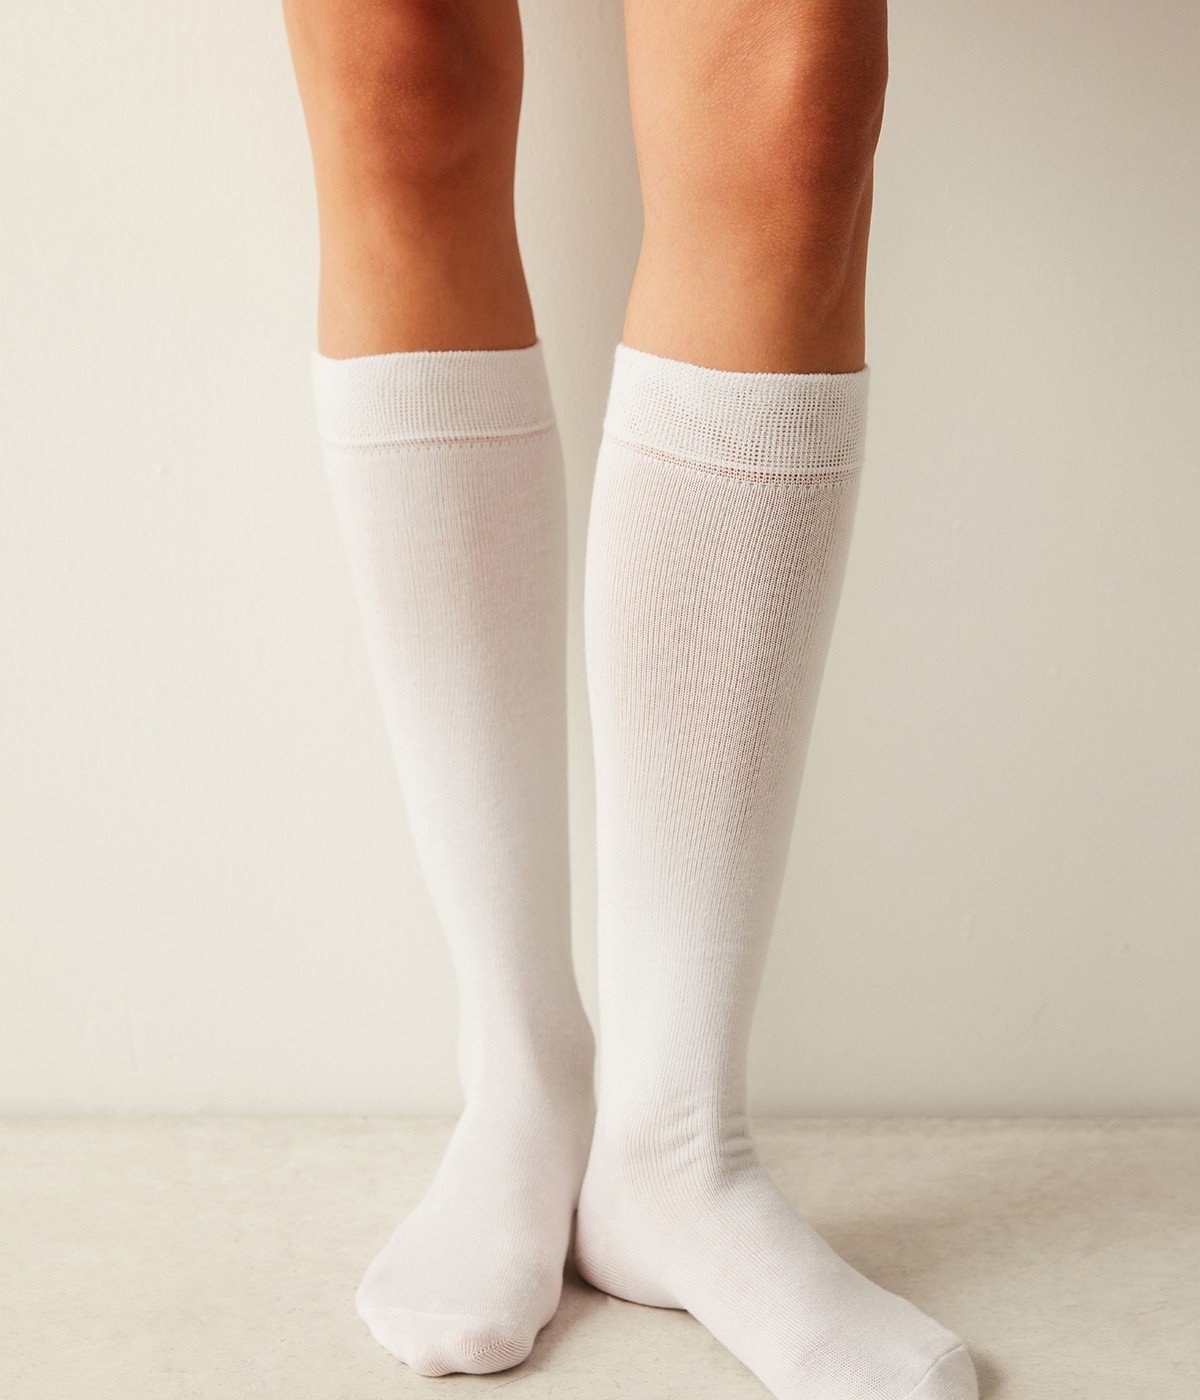 Ciorapi pentru pantalon Clasic